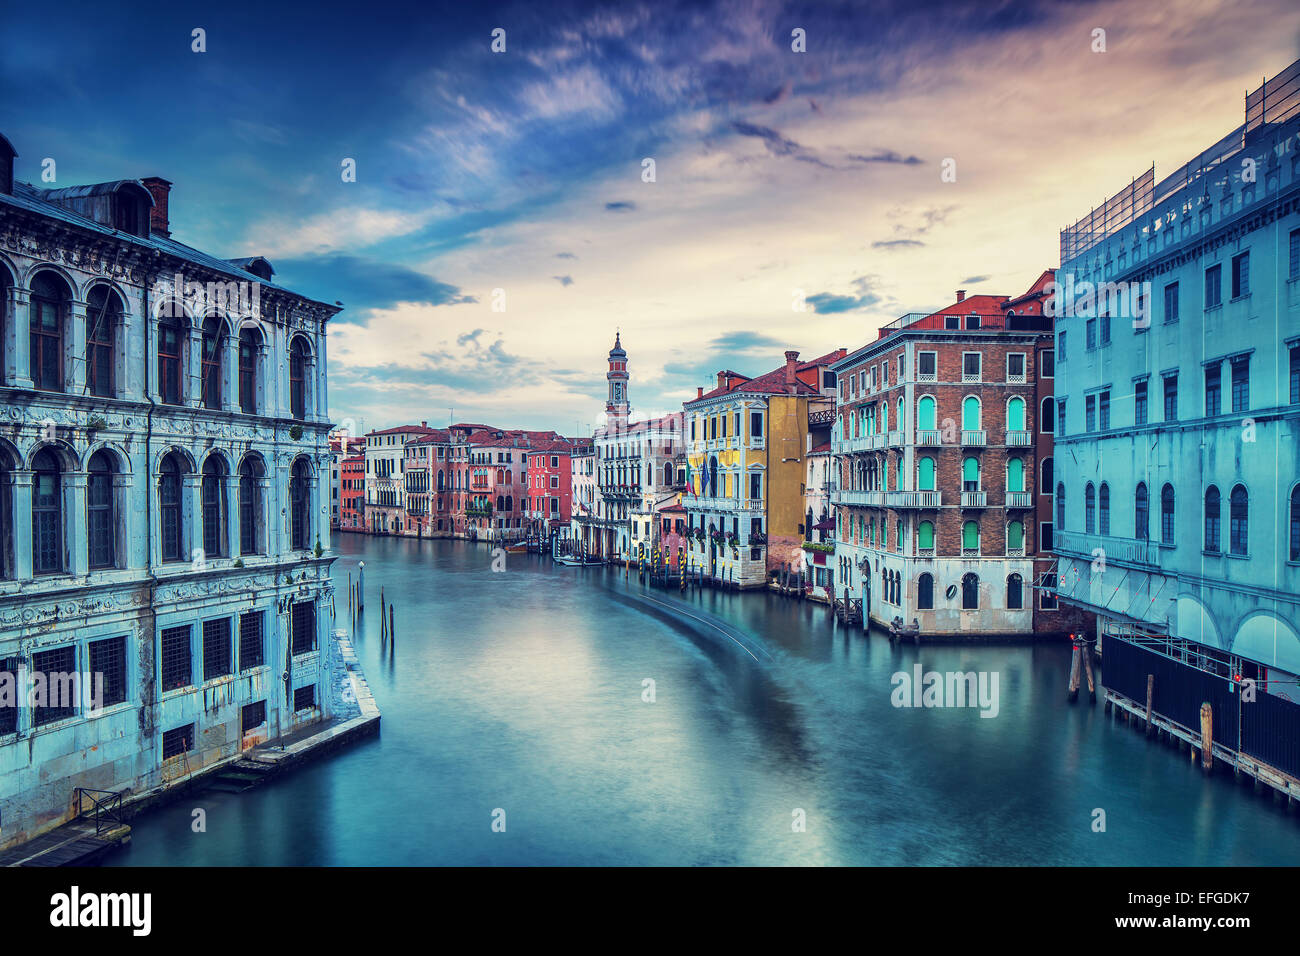 Hermosa ciudad de Venecia en días nublados, maravilloso canal de agua entre magníficos edificios medievales coloridos Foto de stock